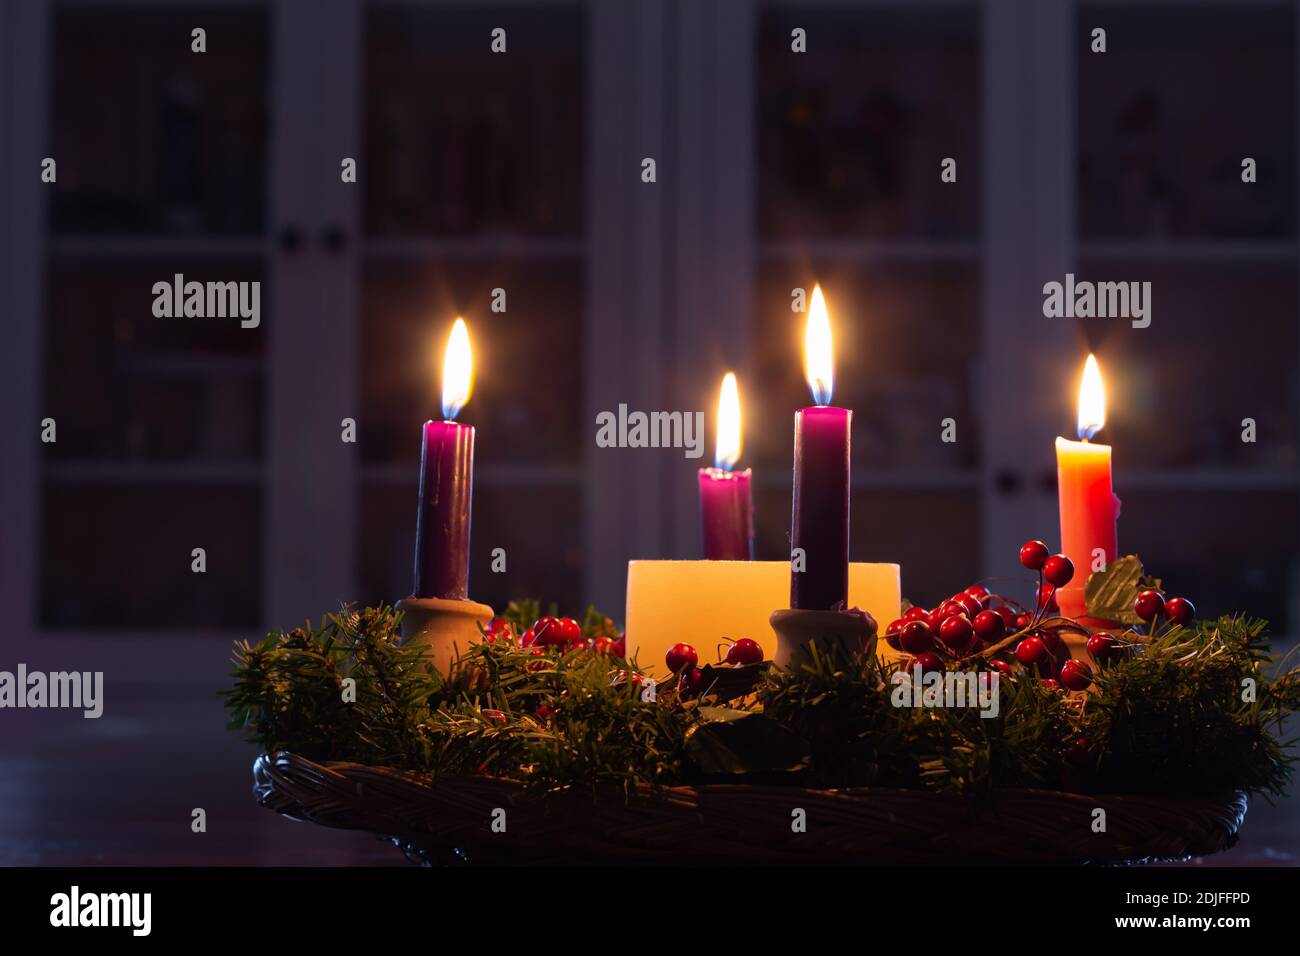 Corona dell'Avvento di Natale con candele che bruciano luminose in camera buia Foto Stock